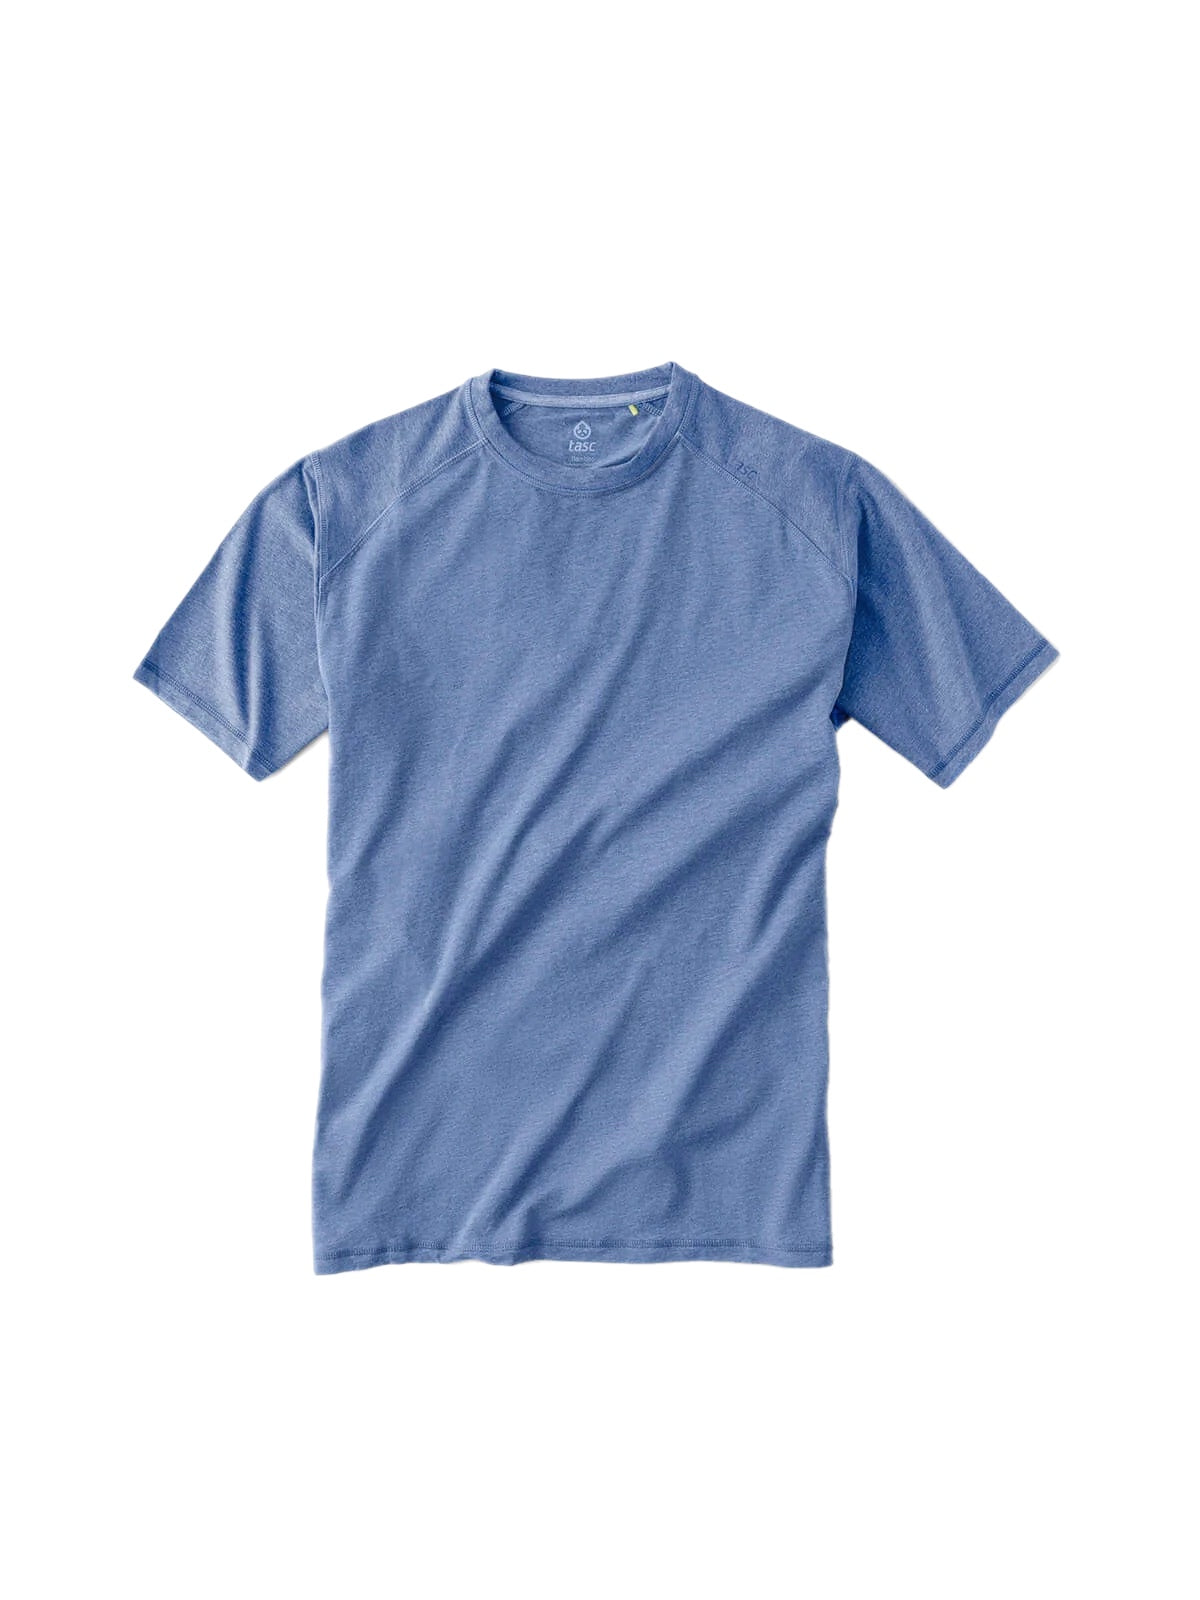 Tasc Carollton T-Shirt